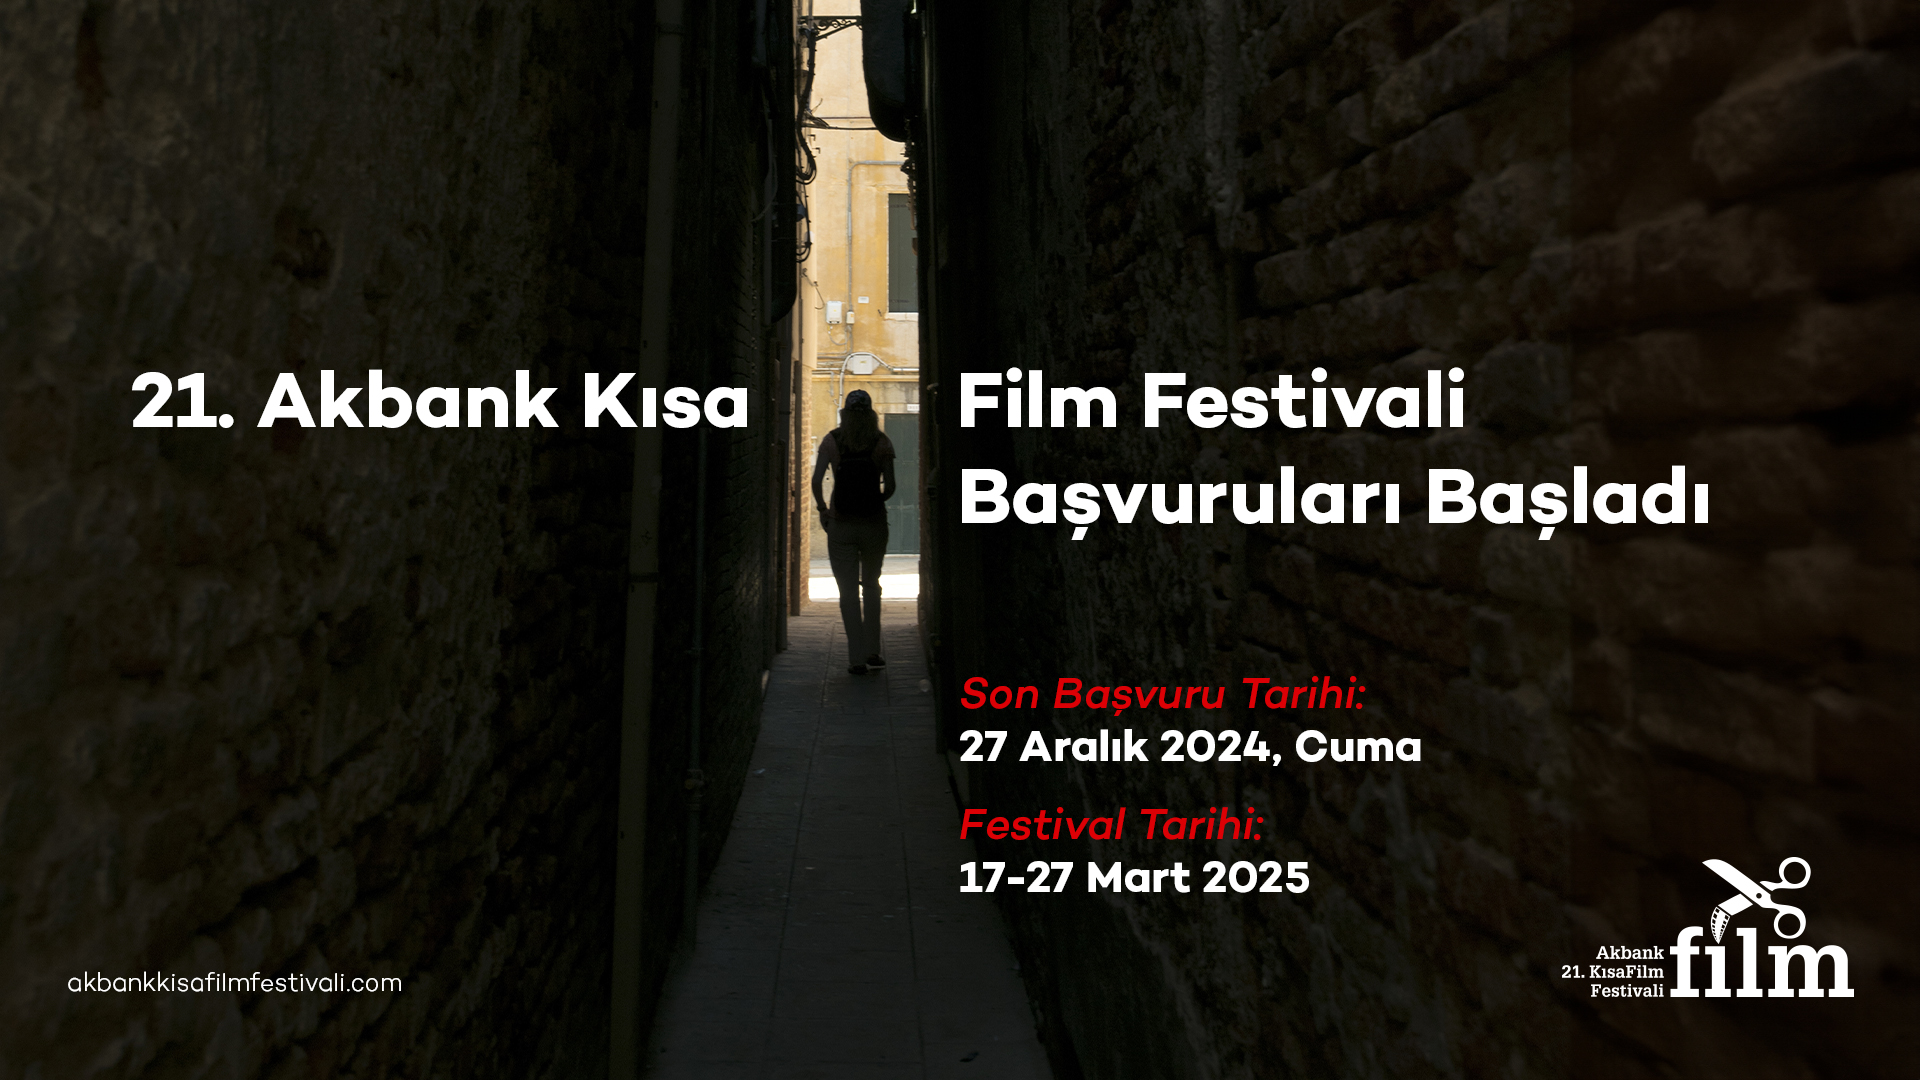 21. Akbank kısa film festivali  başvuruları başladı!